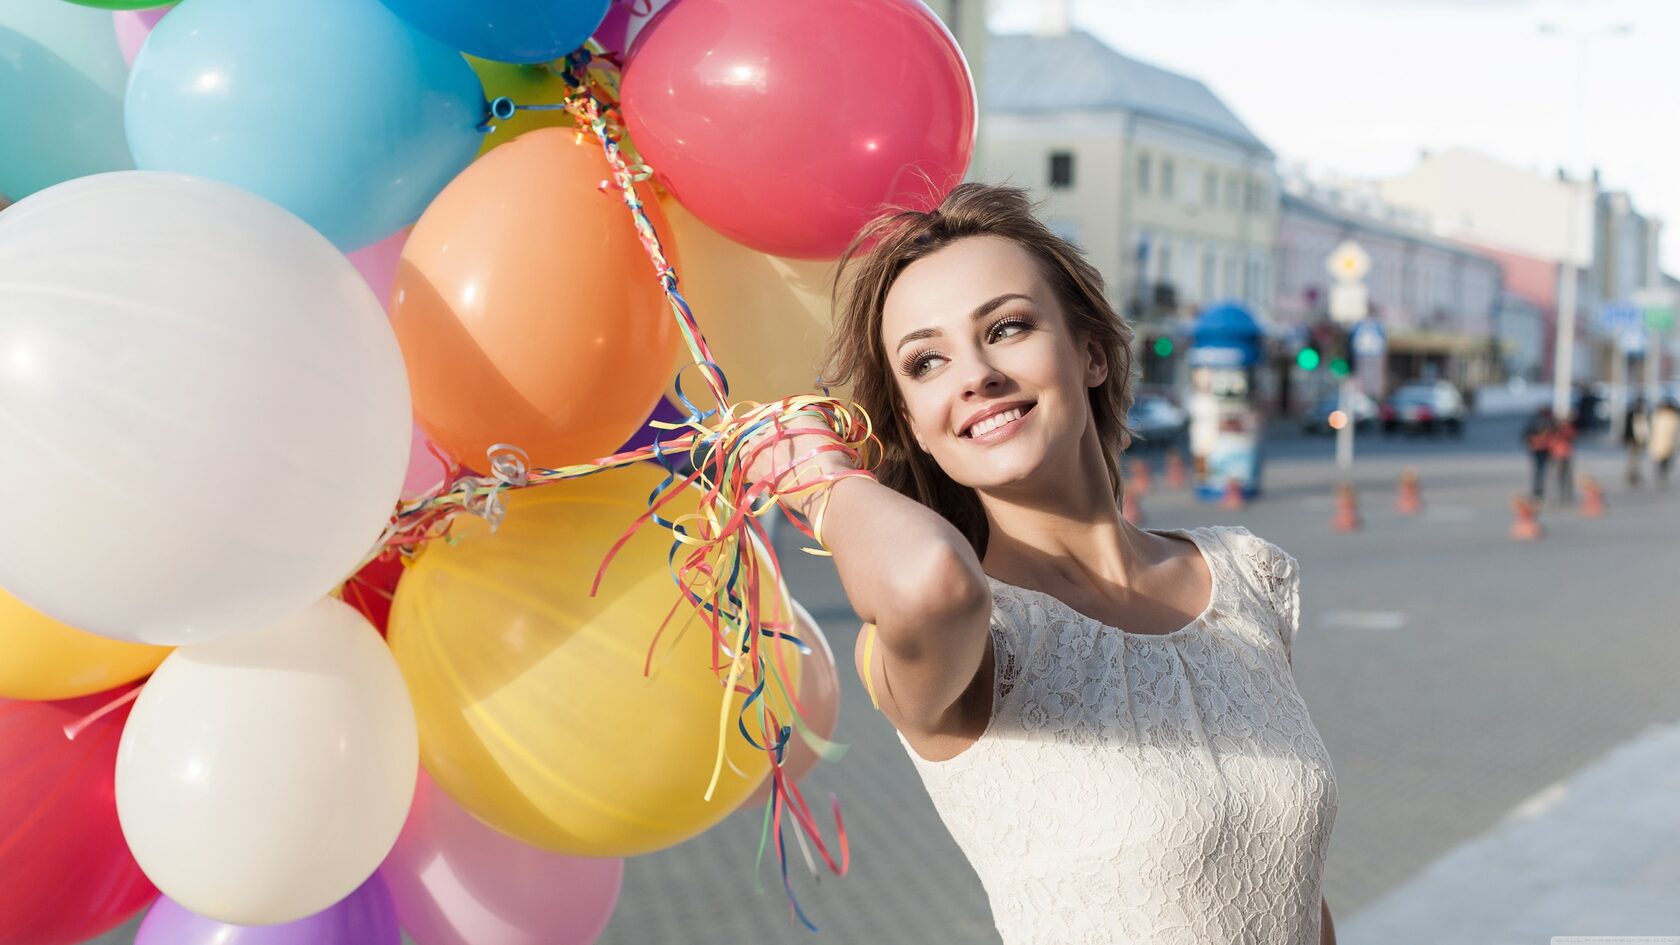 фото с шарами воздушными на день рождения